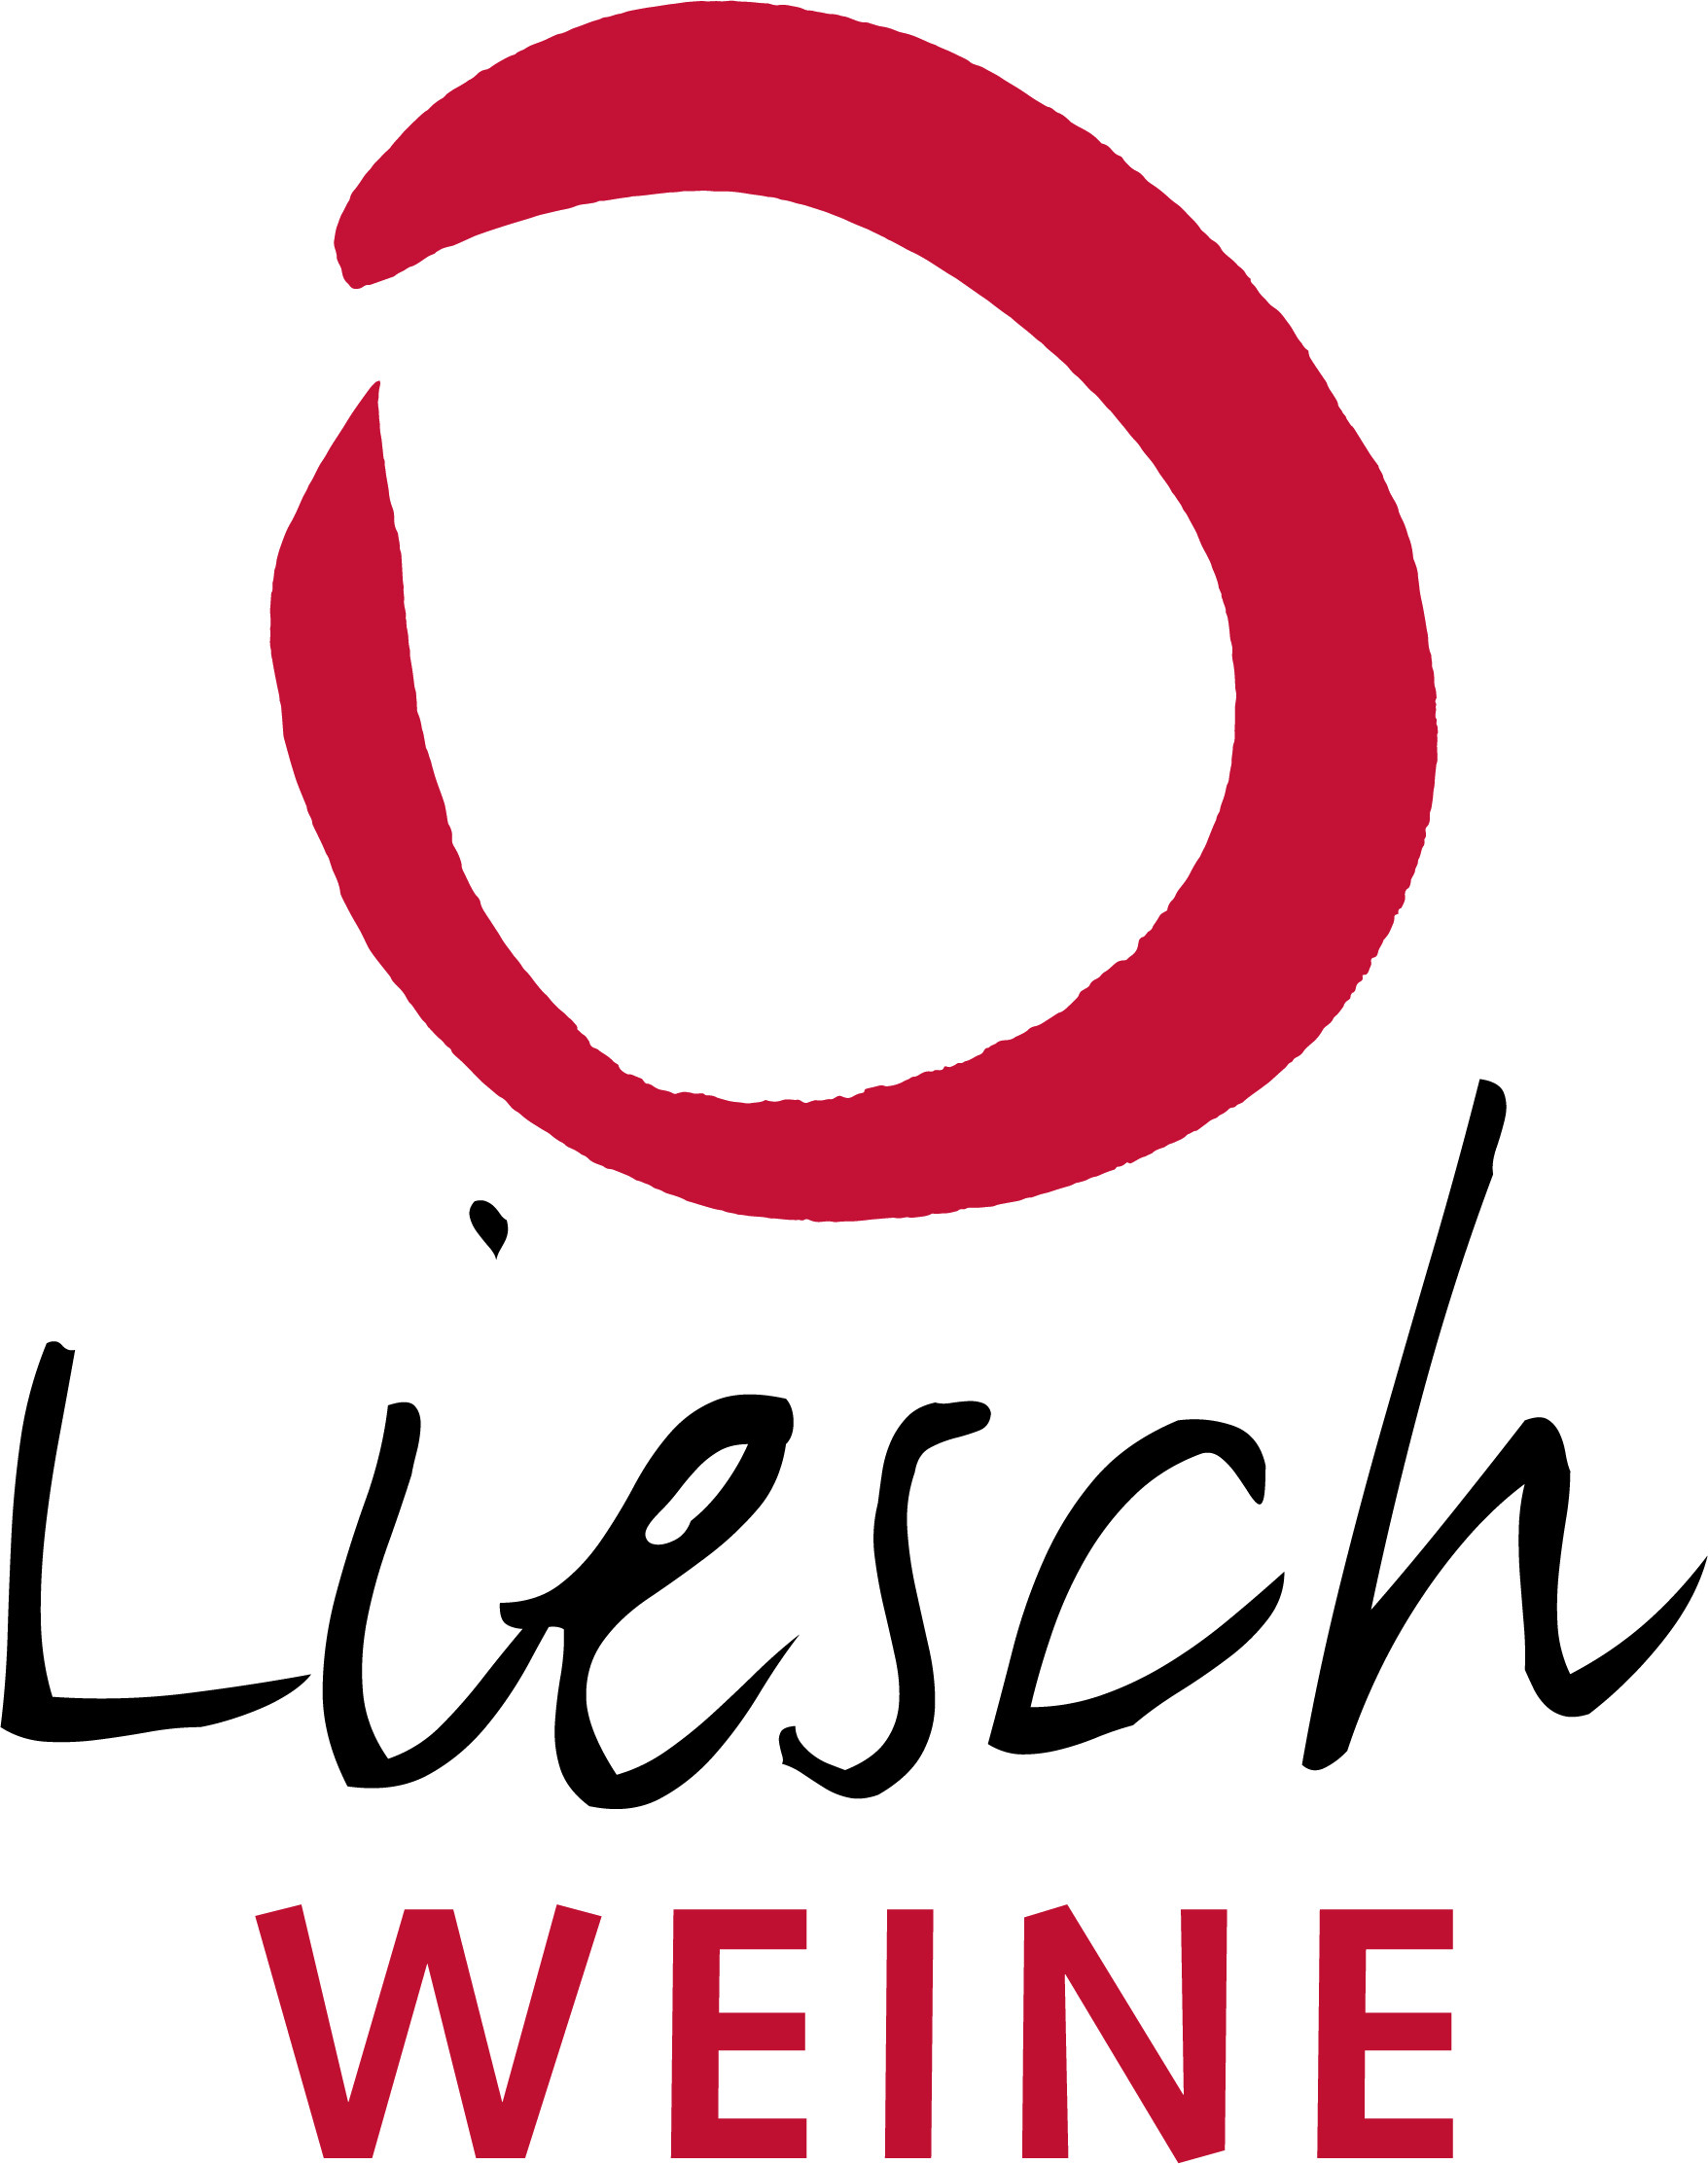 Liesch Weine